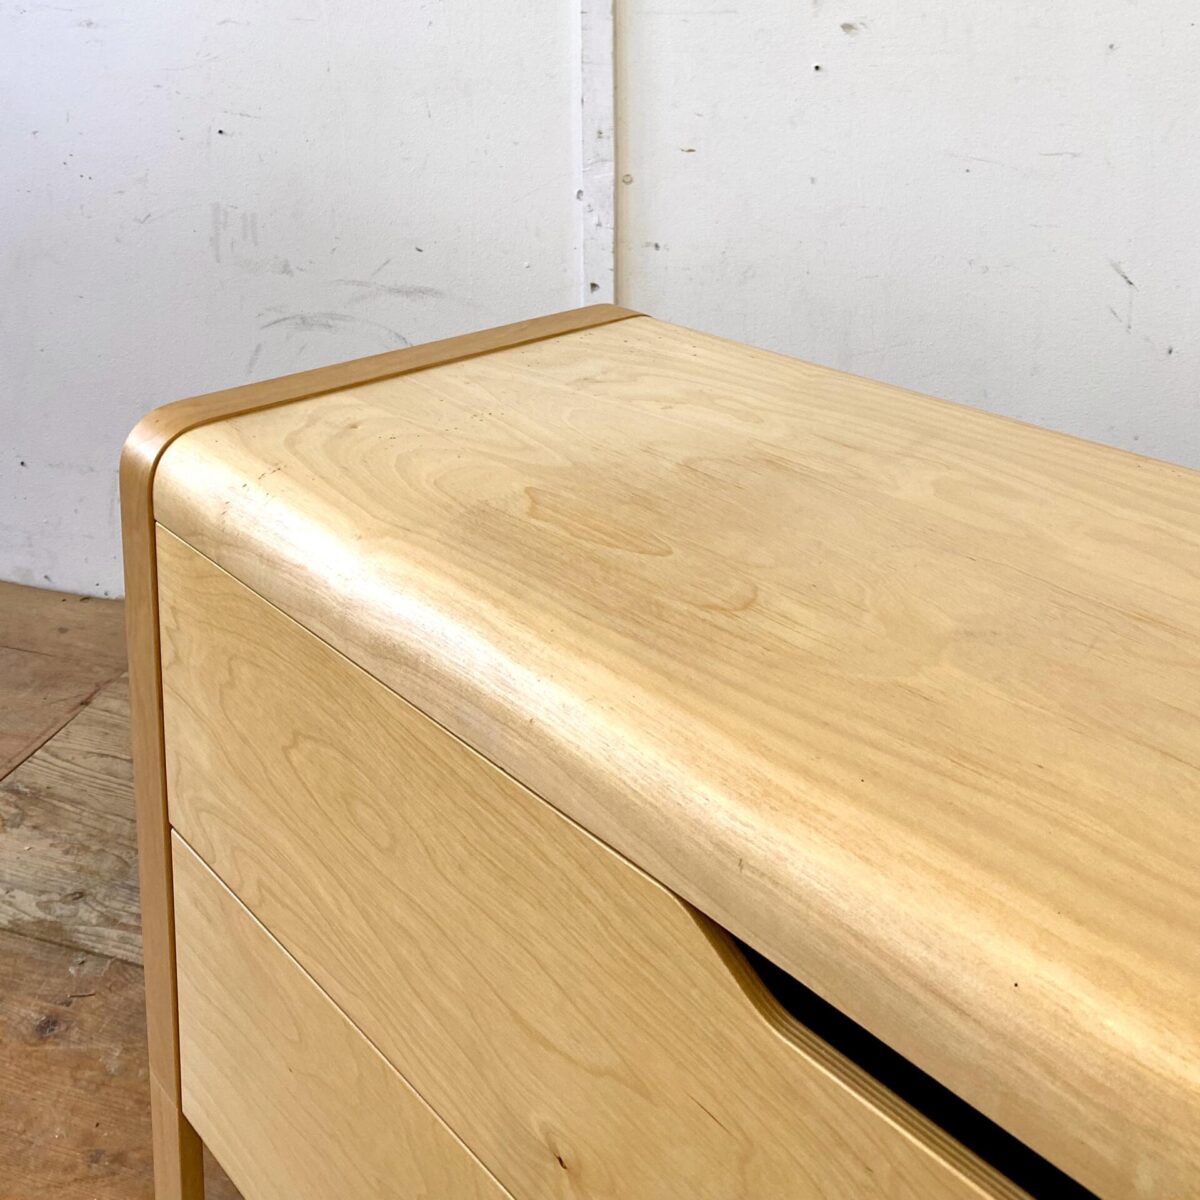 Deuxieme.shop Alvar Aalto Sideboard. Helle Birkensperrholz Kommode mit zwei Schubladen. 130x50cm Höhe 71cm. Neueres qualitativ gut verarbeitetes Sideboard mit abgerundeten Formsperrholz Kanten. Das Möbel steht auf zwei Kufen-artigen Seitenteilen mit runden Füssen.